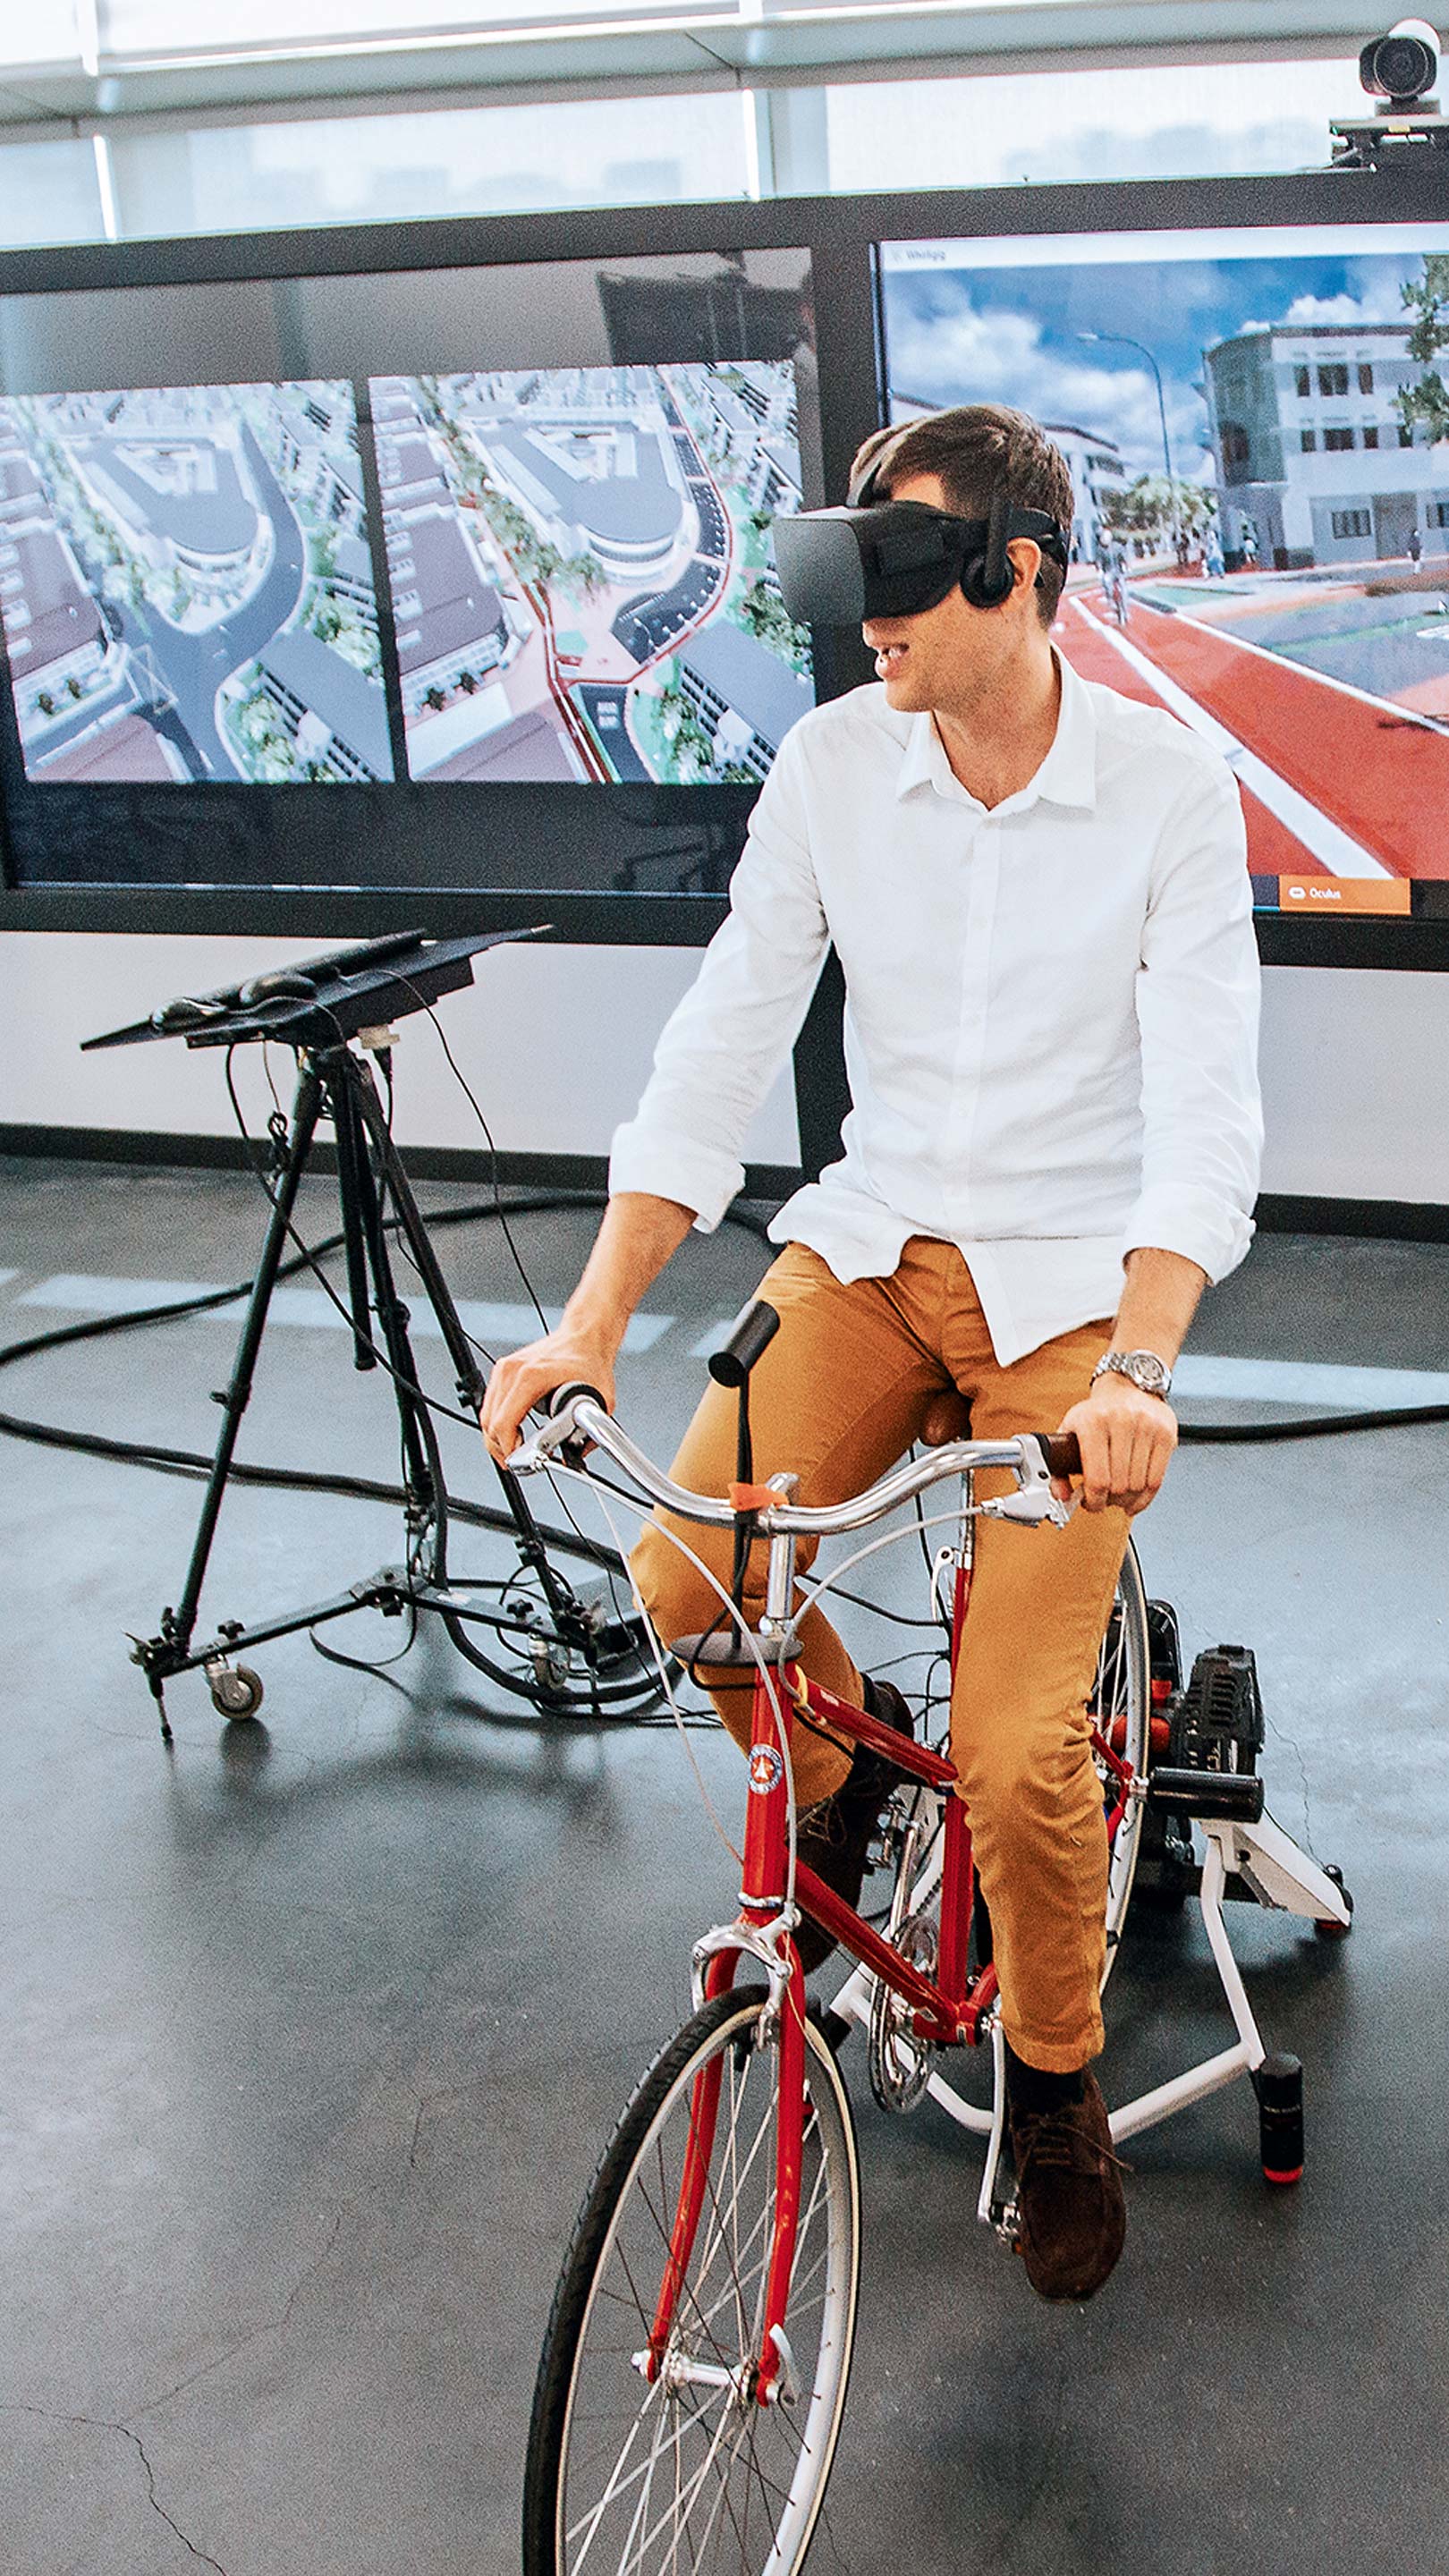 Ein Mann von der Universität Zürich probiert das VR-Erlebnis "Bike to the future" aus.